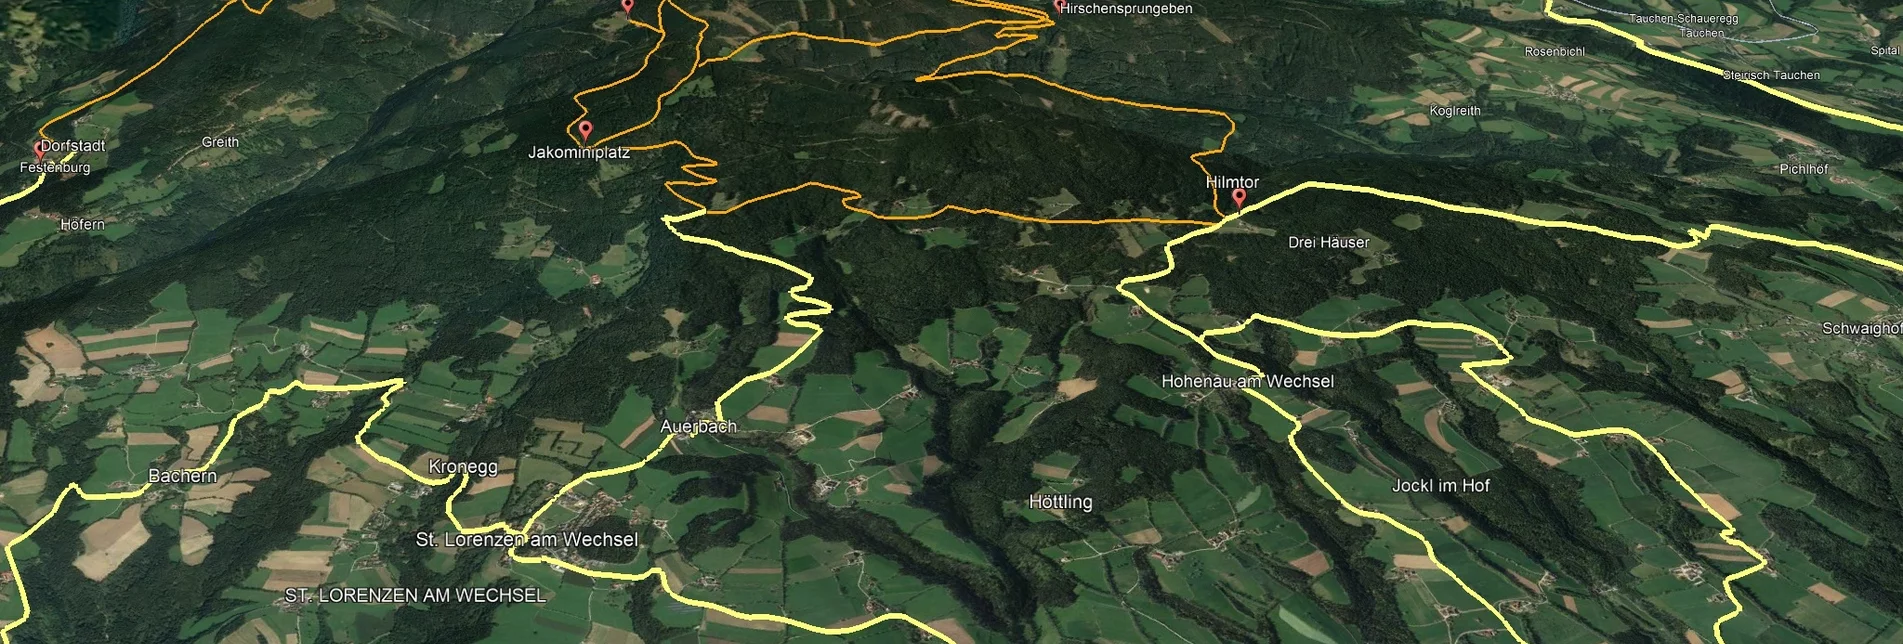 Mountainbike VORSCHAU Steirische Wexl Trails - Hirschsprungeben Route - Touren-Impression #1 | © Verein Tourismusentwicklung Steirischer Wechsel